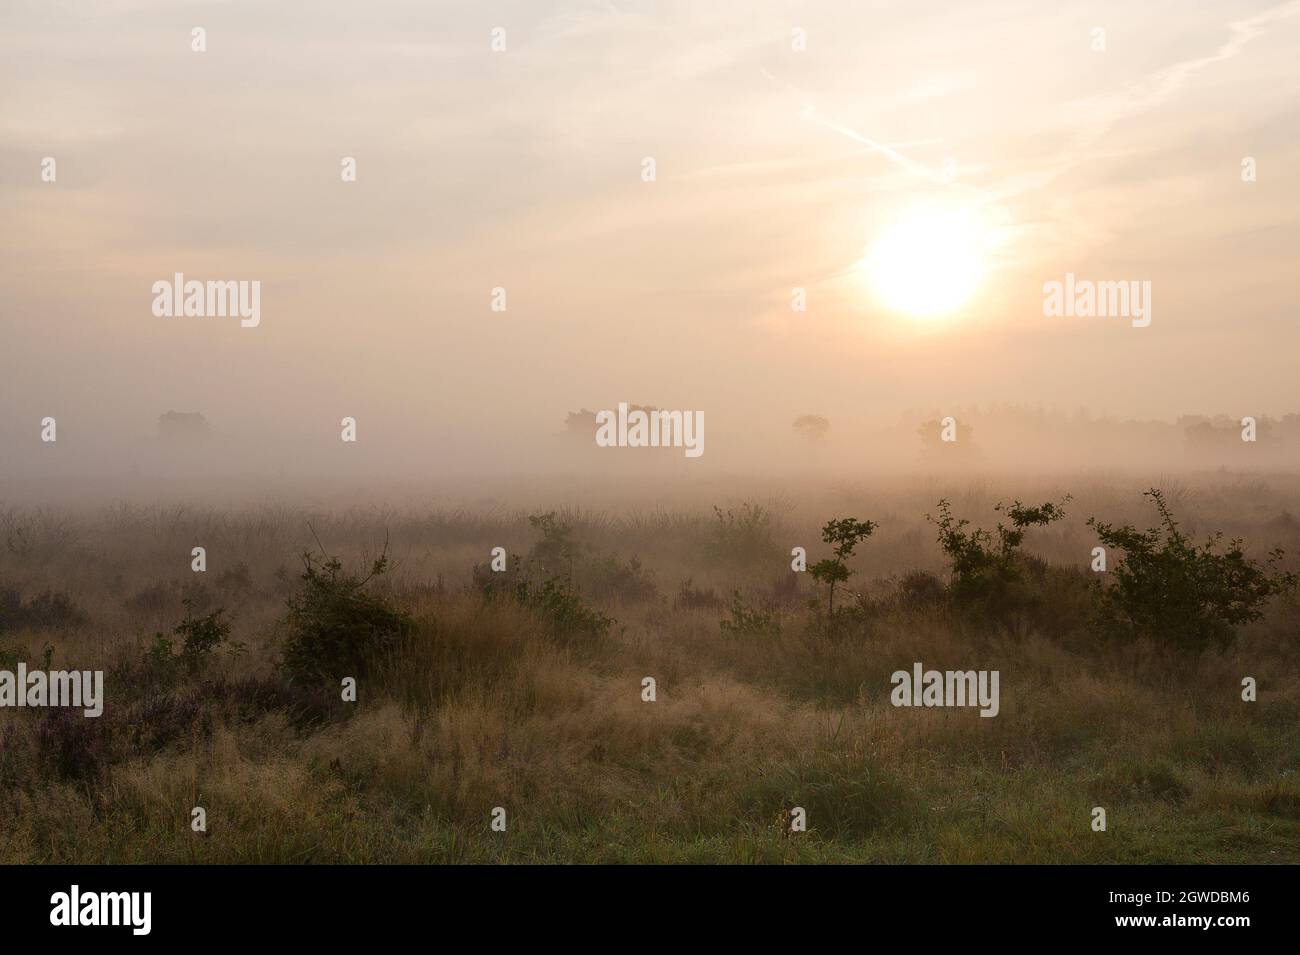 Morning landscape with low fog over heathland, Veluwe, the Netherlands Stock Photo